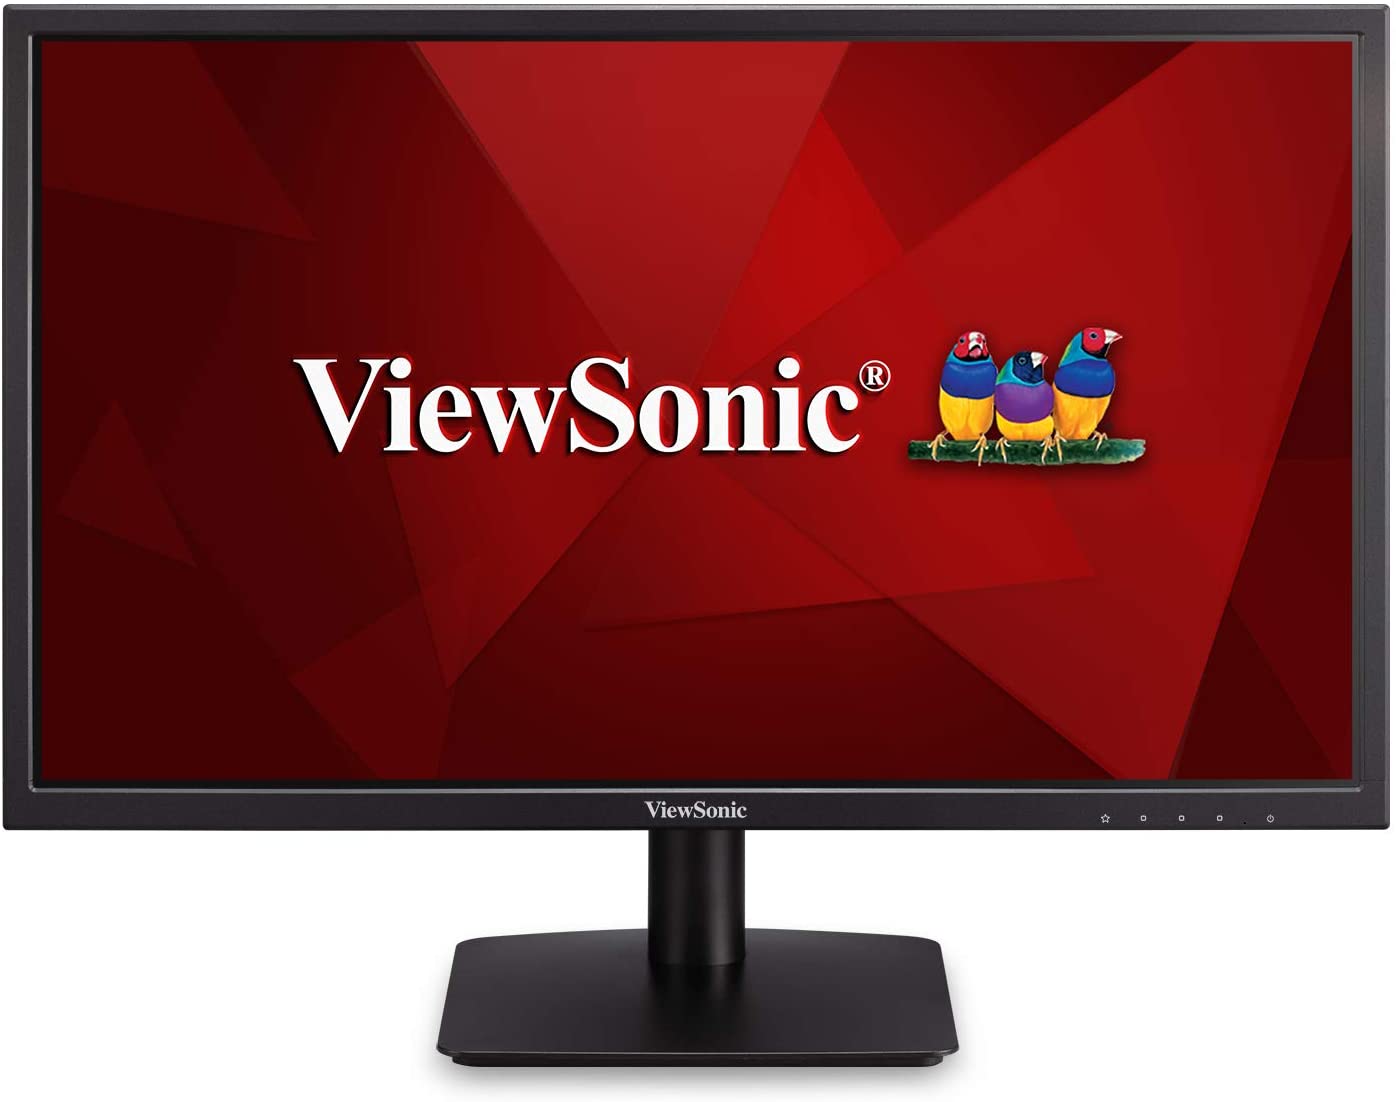 ViewSonic VA2405-H 24-inch Full HD Monitor - Store 974 | ستور ٩٧٤